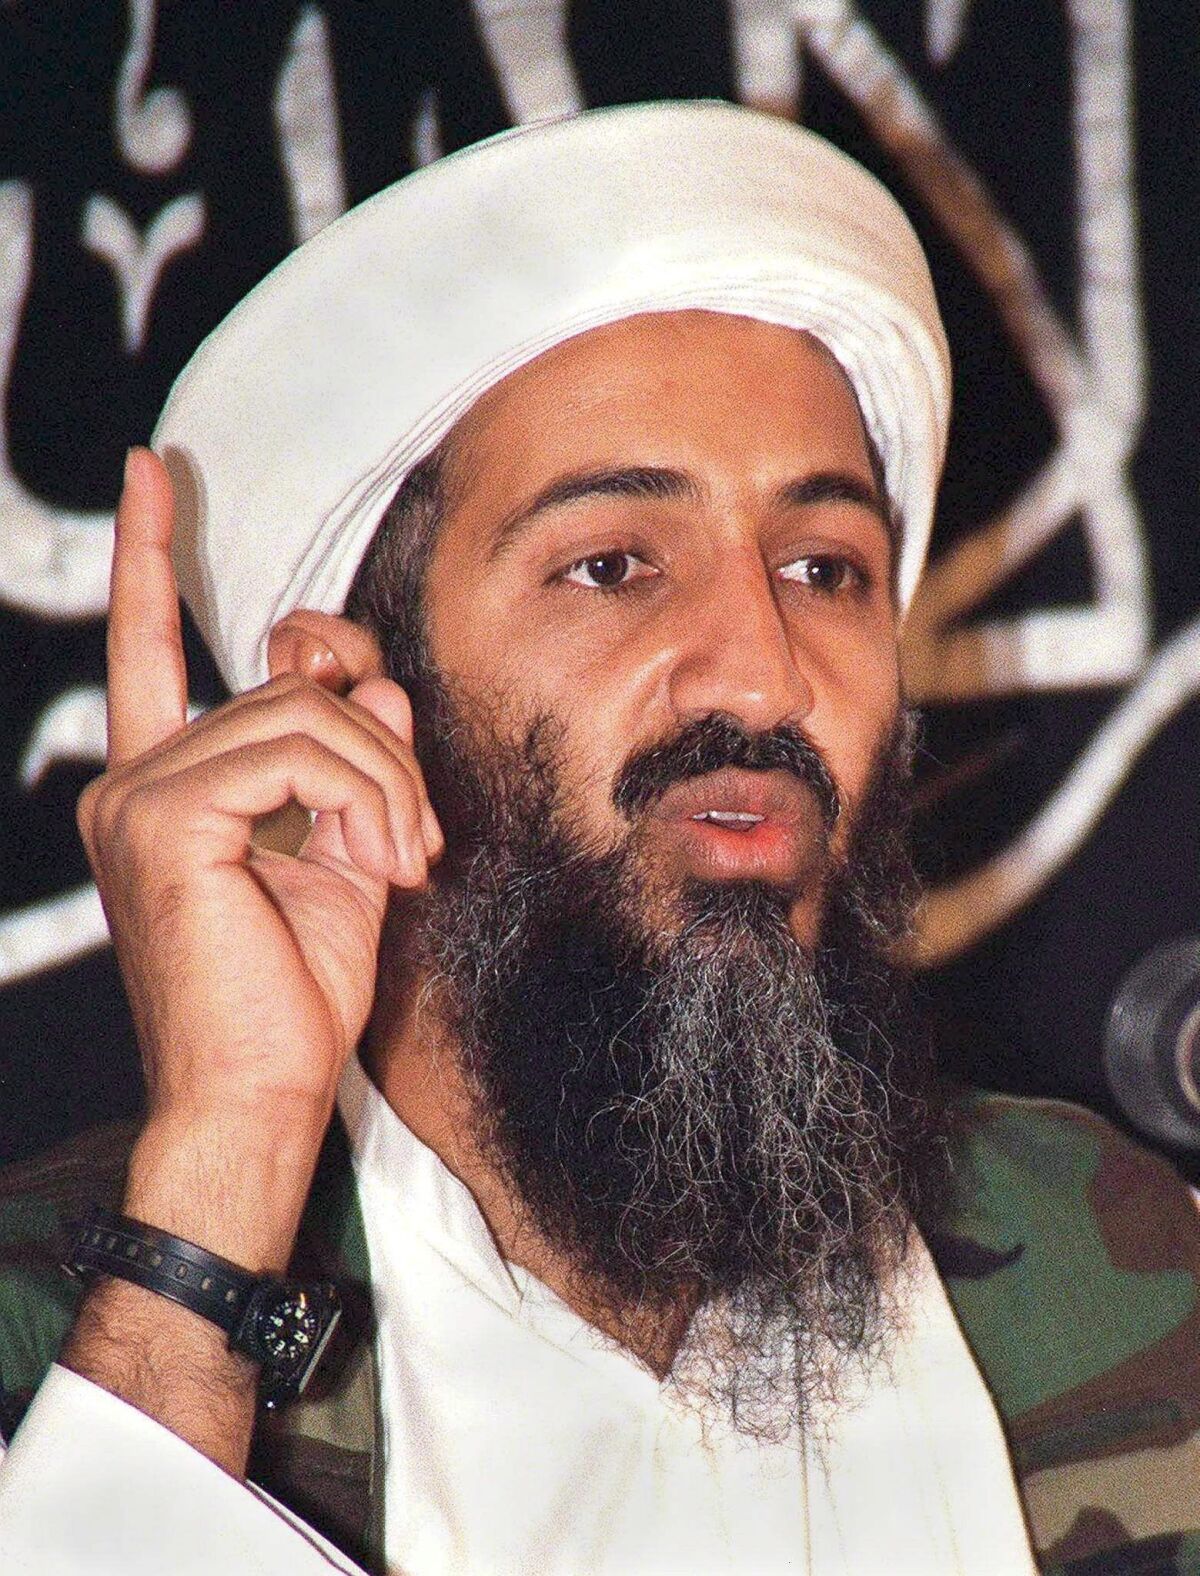 La CIA frente a Bin Laden: La clave estaba en el mensajero - Los Angeles Times